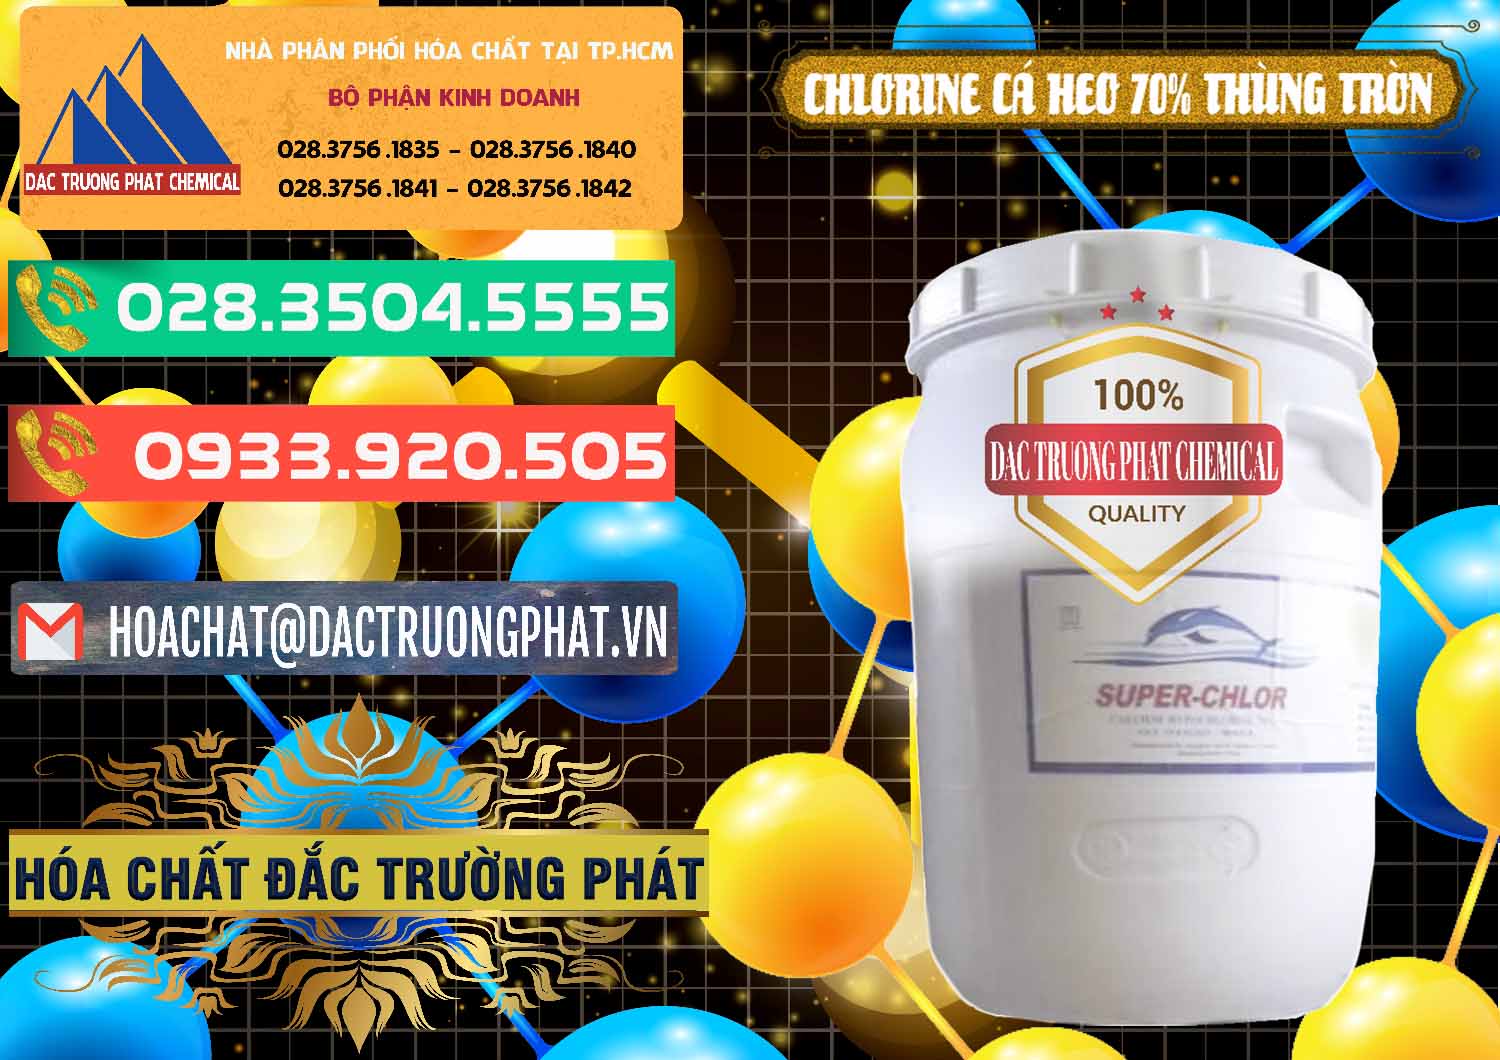 Công ty chuyên cung cấp _ bán Clorin - Chlorine Cá Heo 70% Super Chlor Thùng Tròn Nắp Trắng Trung Quốc China - 0239 - Công ty chuyên cung cấp - kinh doanh hóa chất tại TP.HCM - congtyhoachat.com.vn